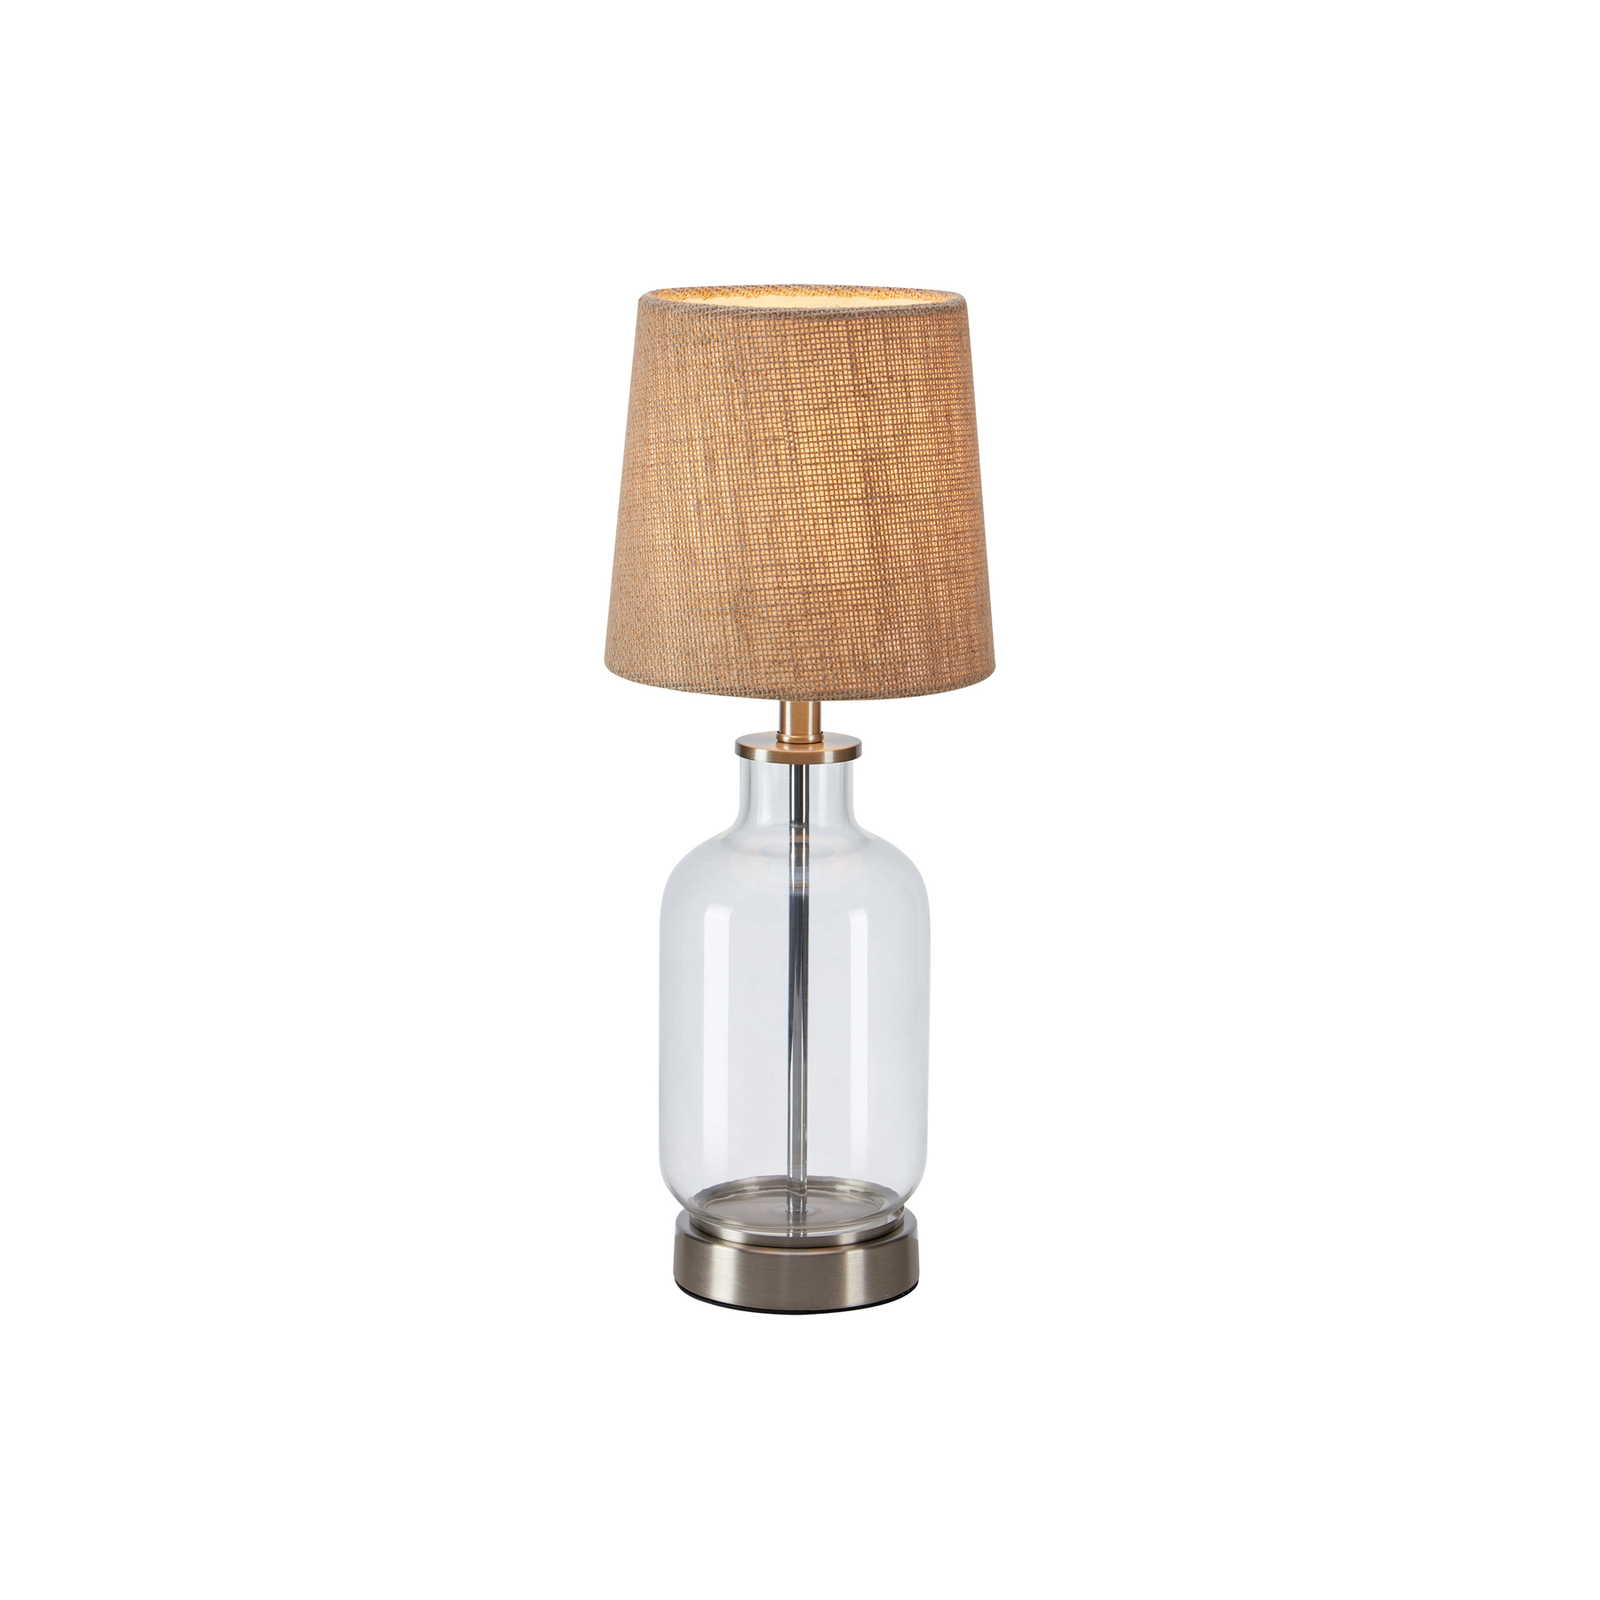 Lampa stołowa Costero, przezroczysty/naturalny, 43 cm